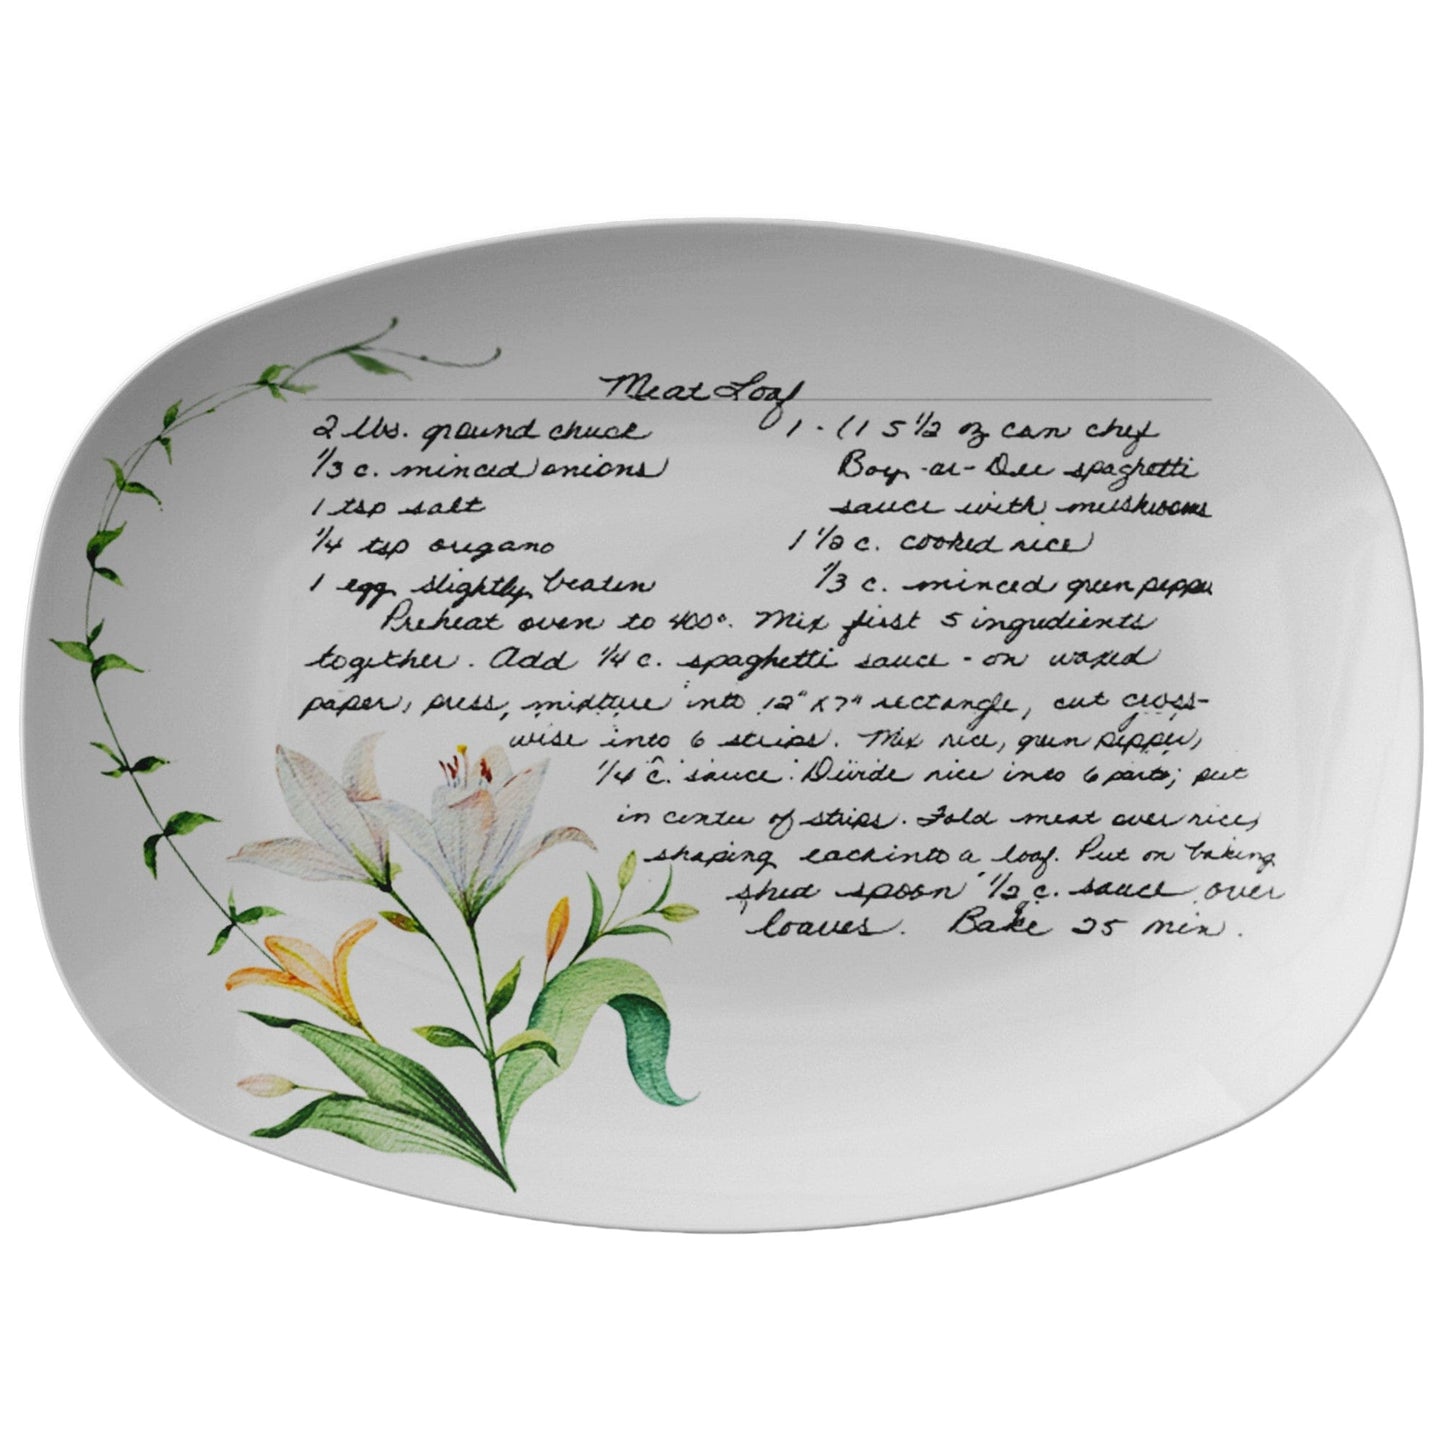 Kate McEnroe New York Handwritten Recipe Platter, Personalized Handwriting Keepsake for Family Heirloom Recipes Personalized Platters PP1-REC-LIL-3